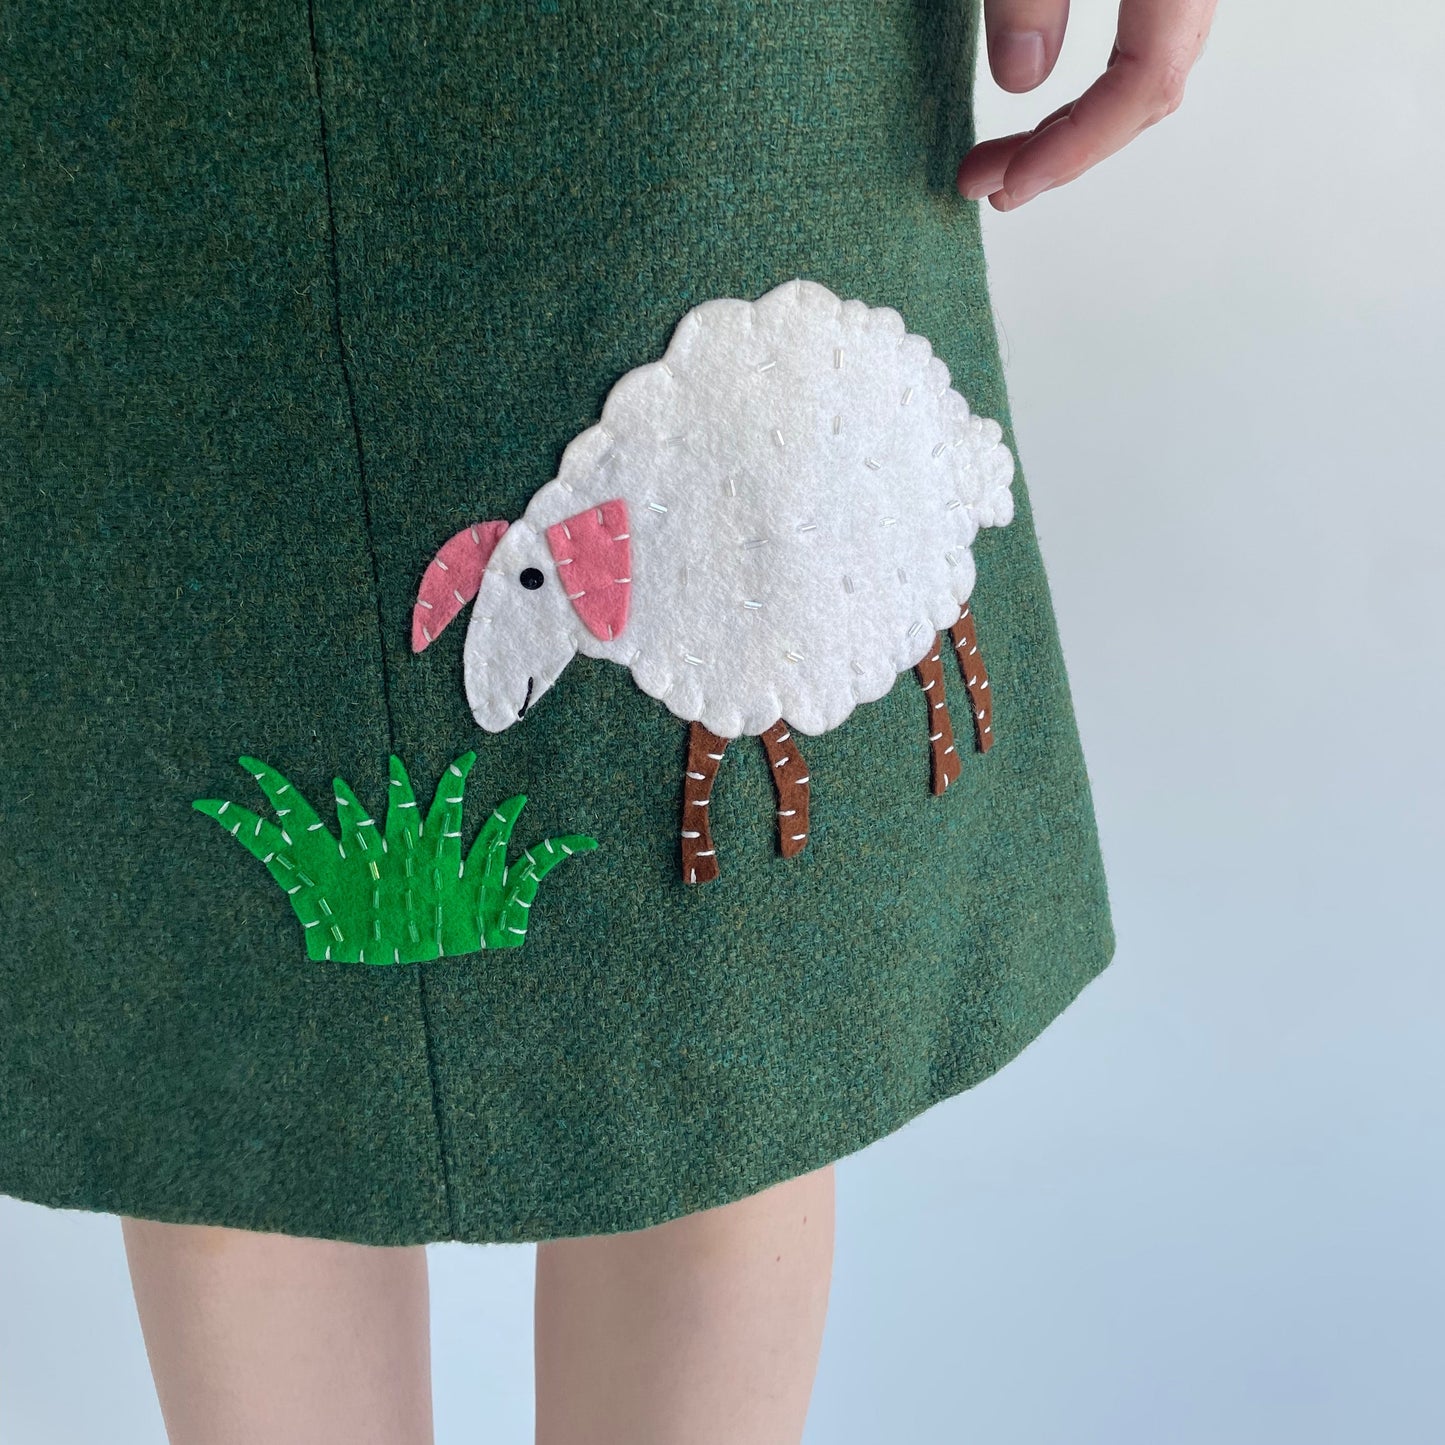 moschino wool skirt